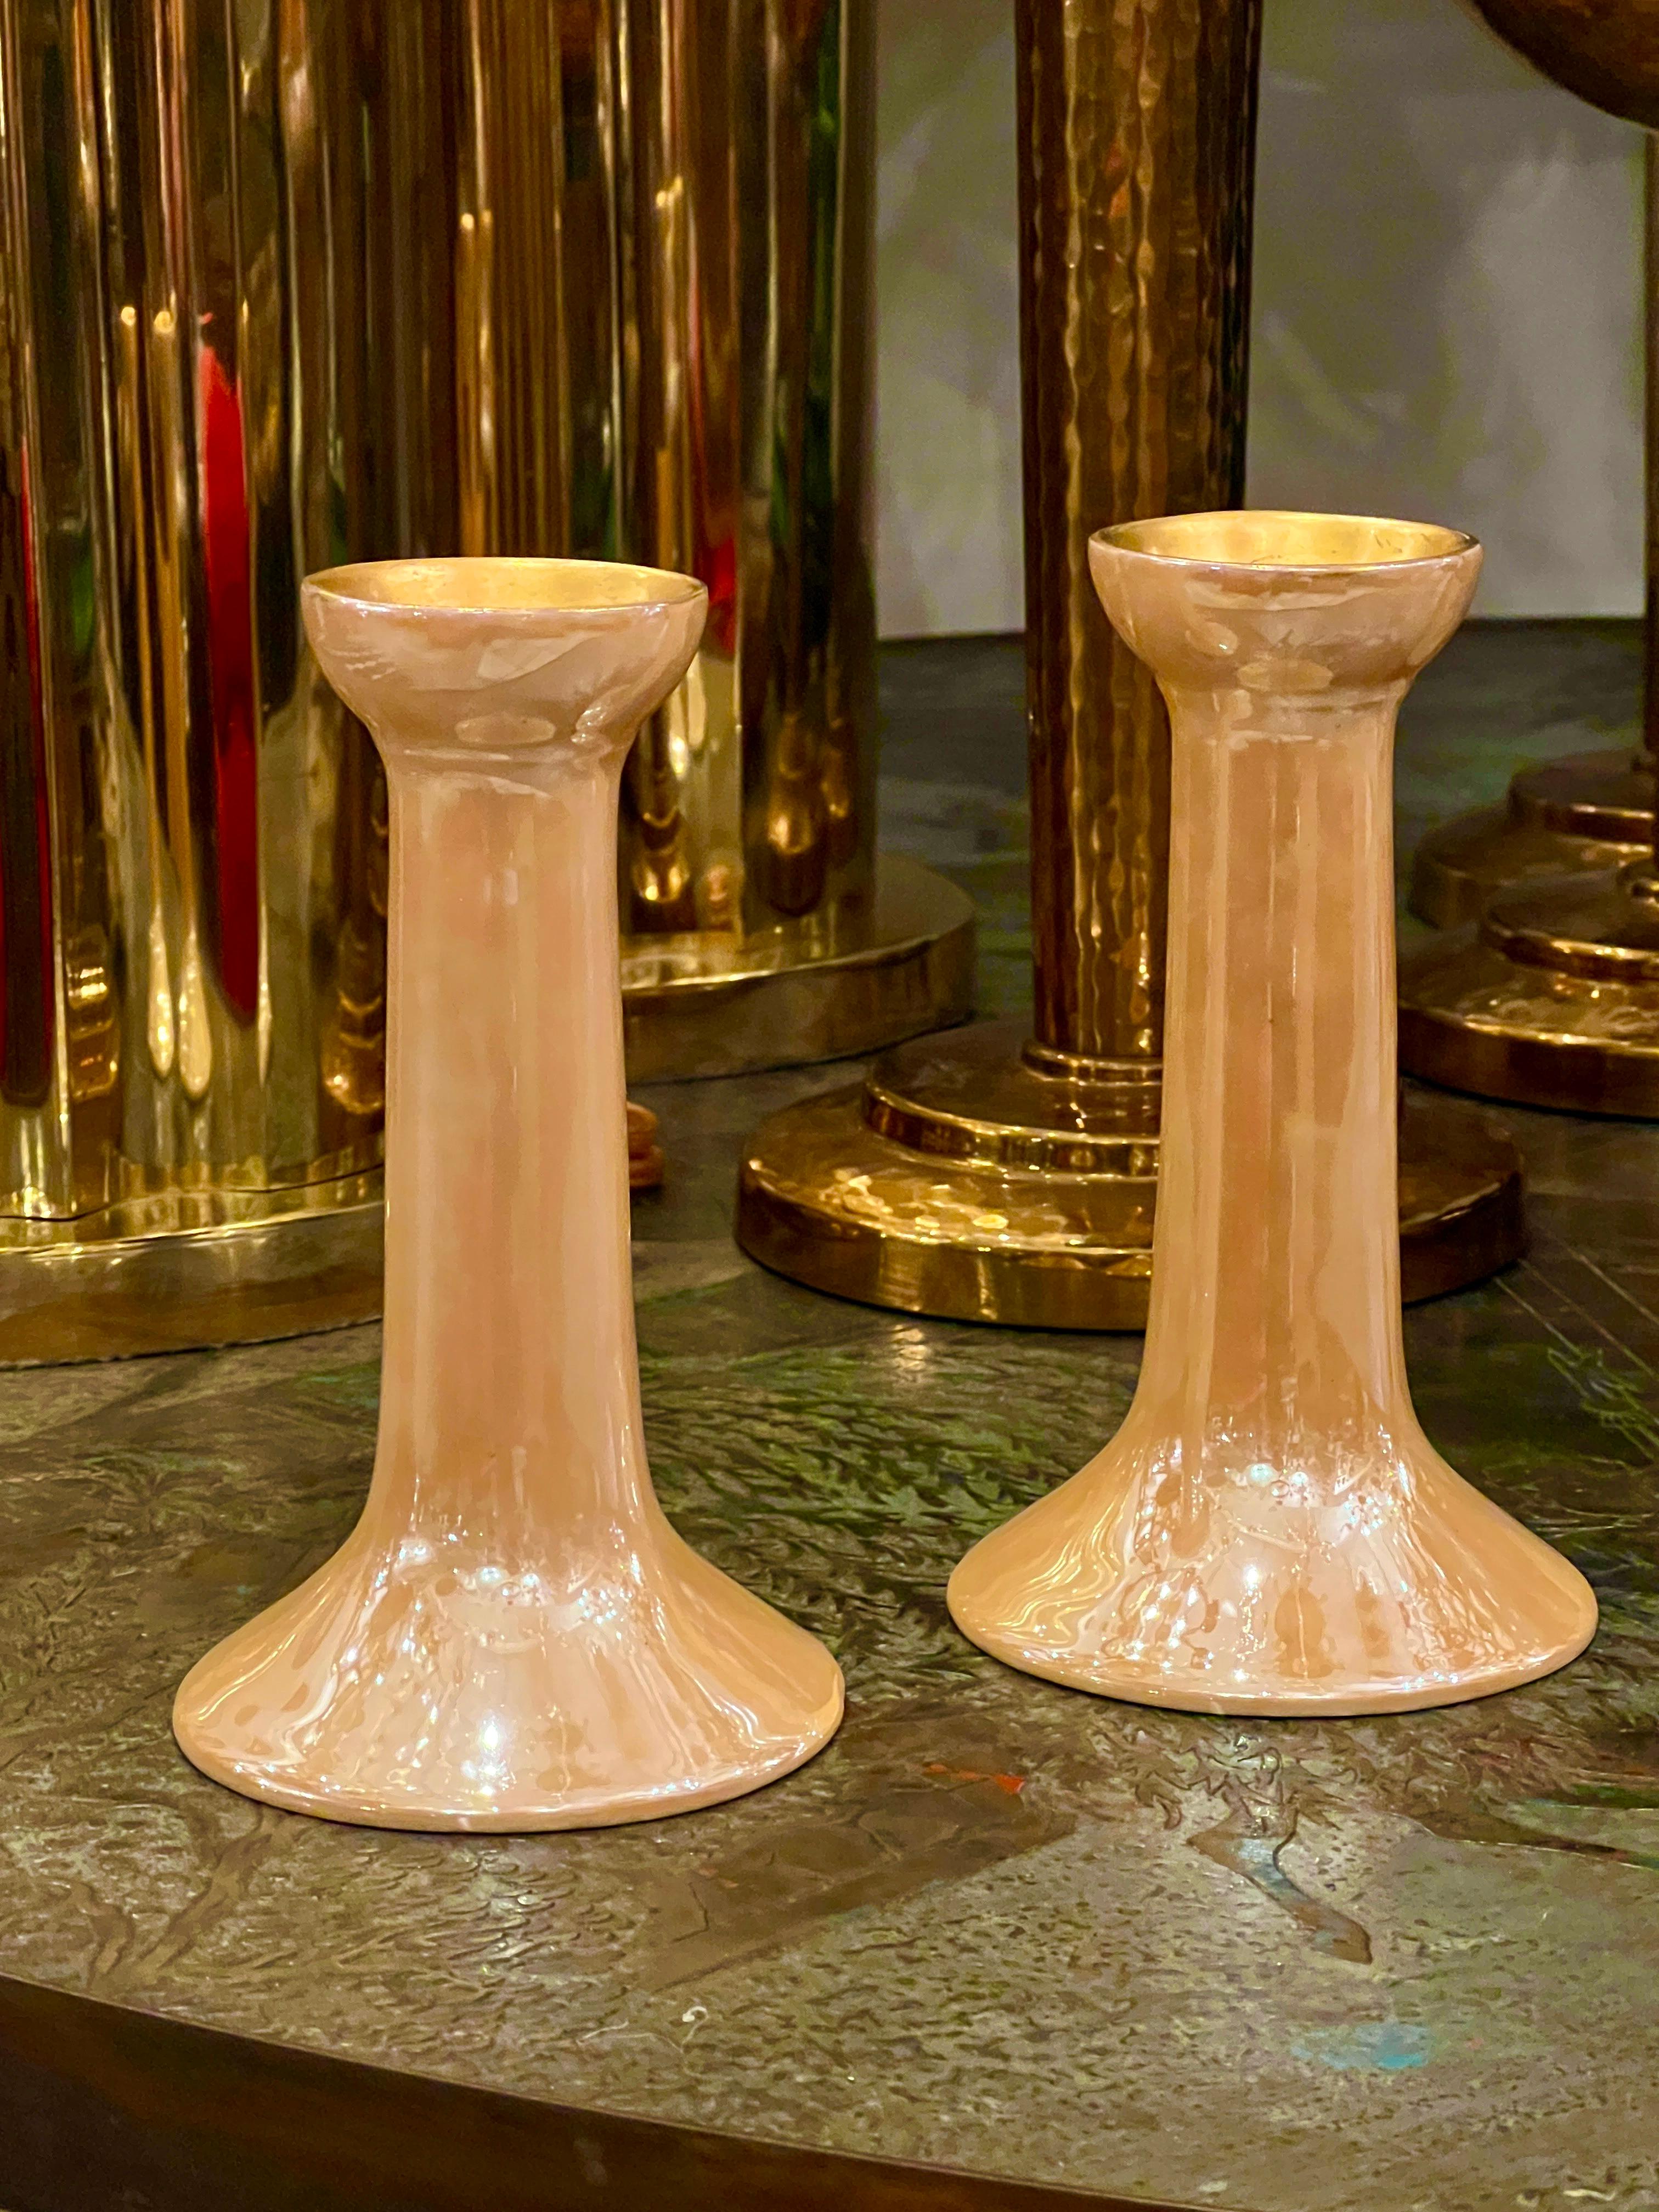 Ein Paar französische Kerzenhalter aus glasiertem Porzellan im Art Déco-Stil, um 192o'a.

Abmessungen:
Höhe des Körpers: 6,5